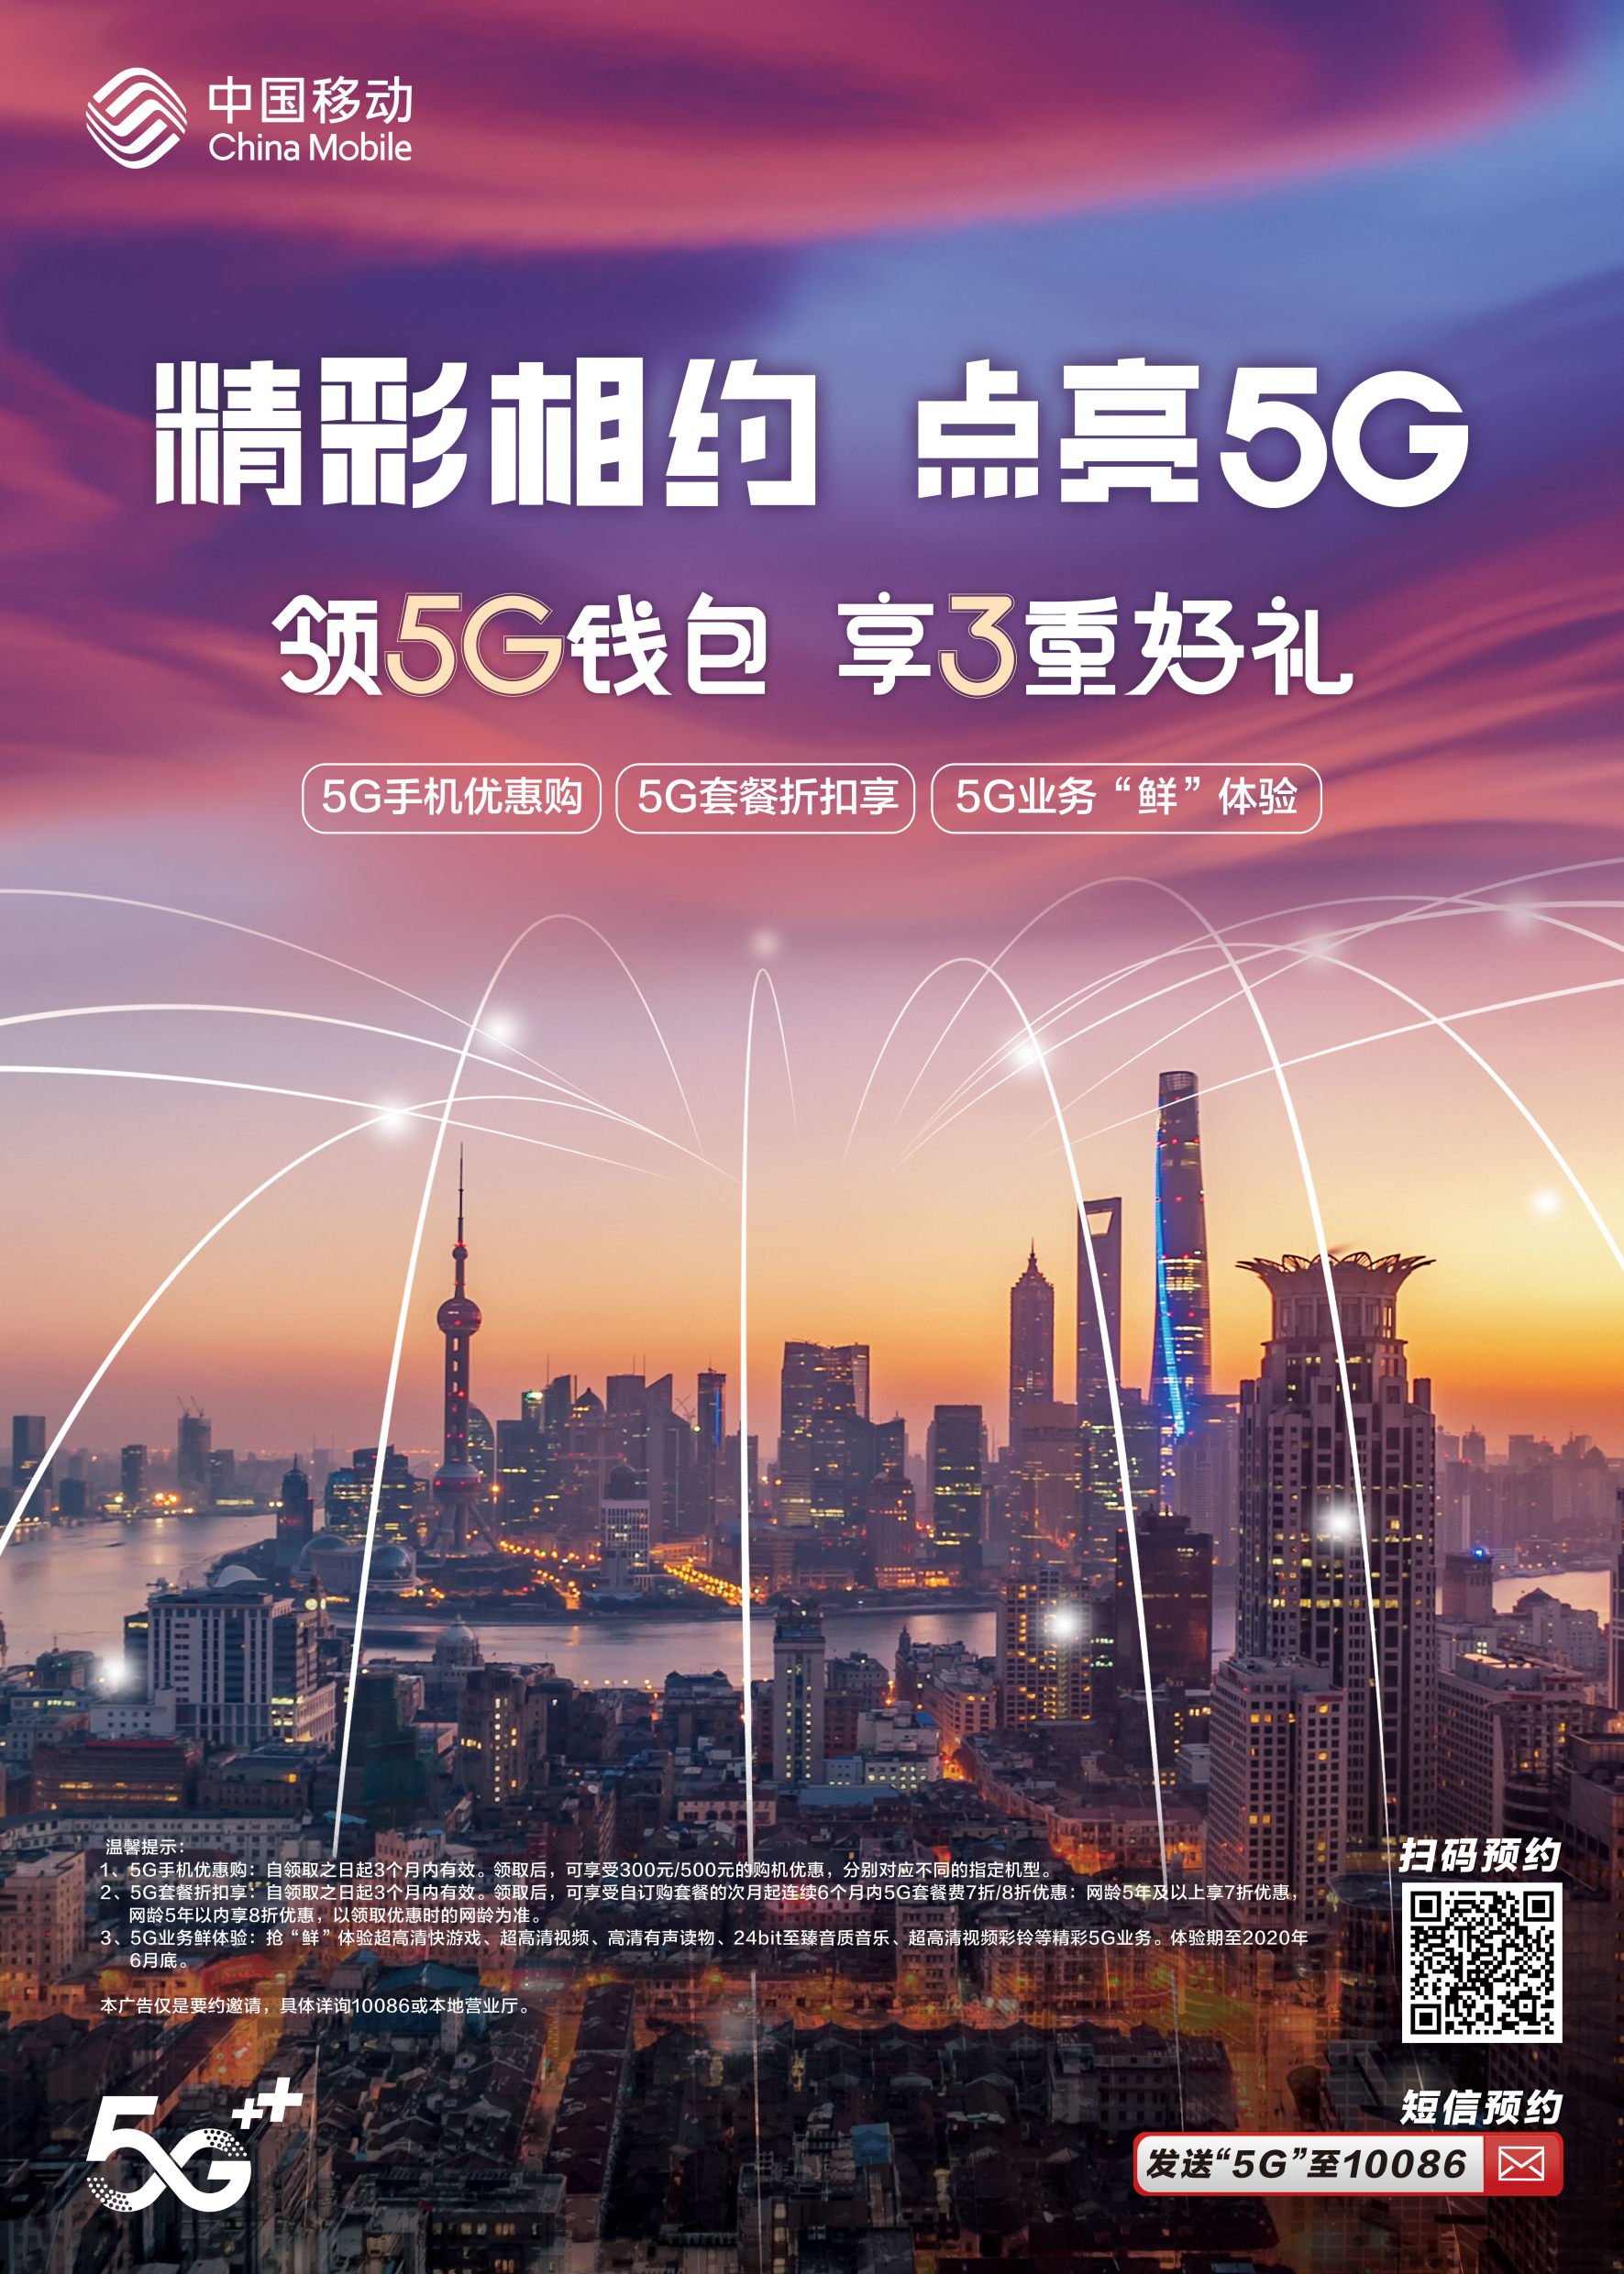 中国移动开放 5G 网络，精心设计项目与优惠政策，提升用户高速网络生活体验  第4张